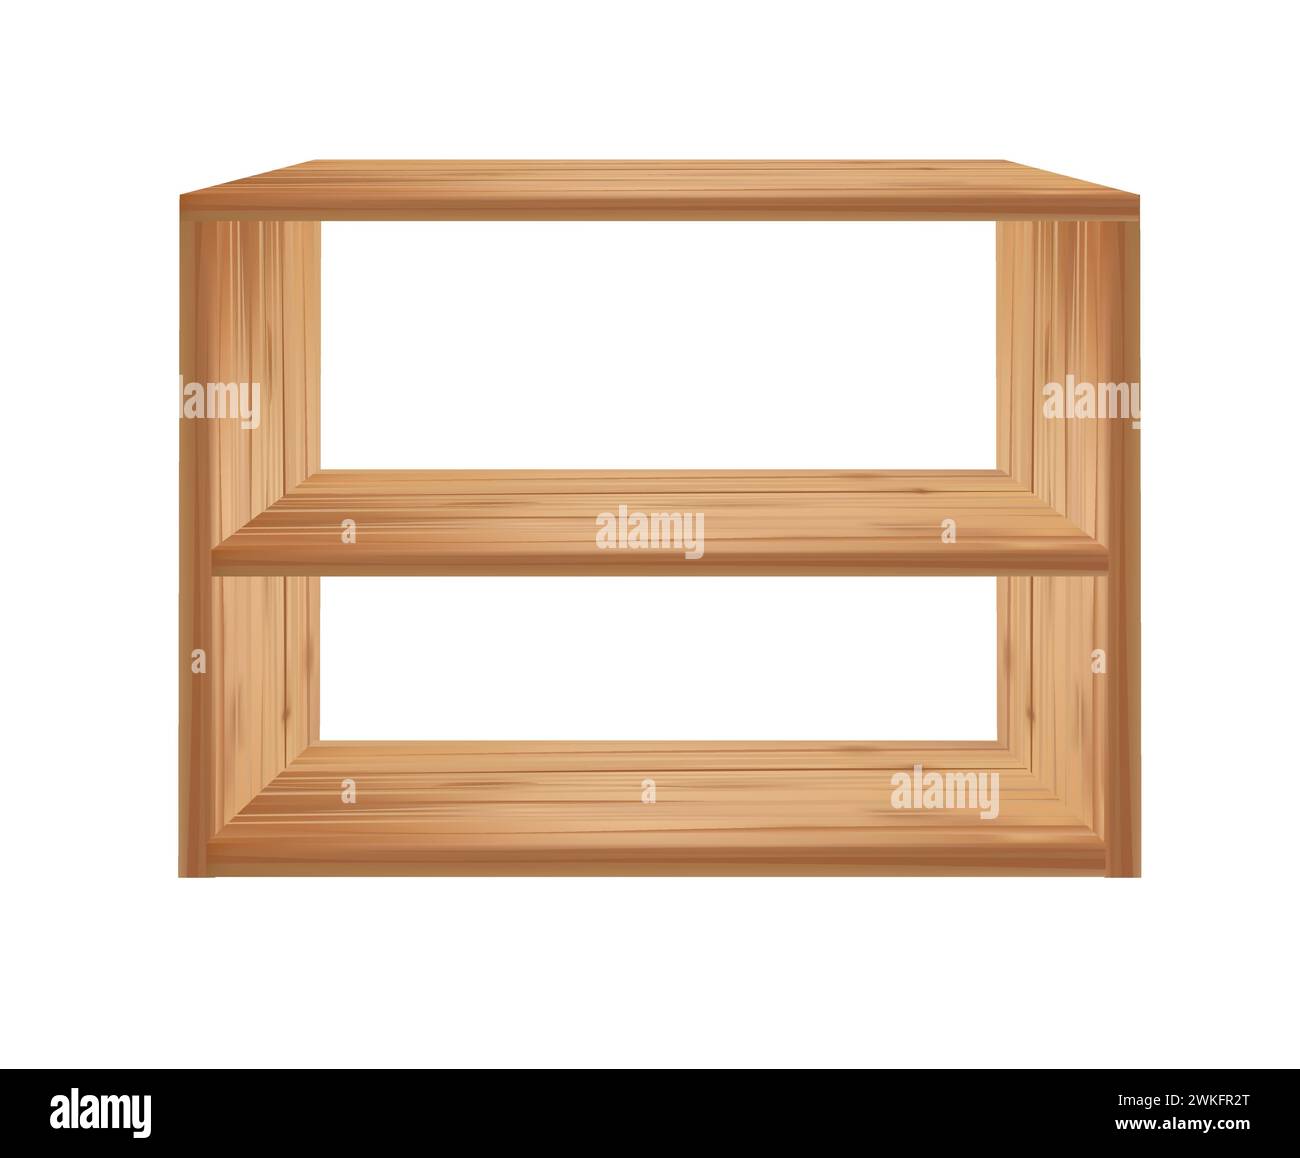 Wooden oak plank shelf, perspective view, vector Stock Vector